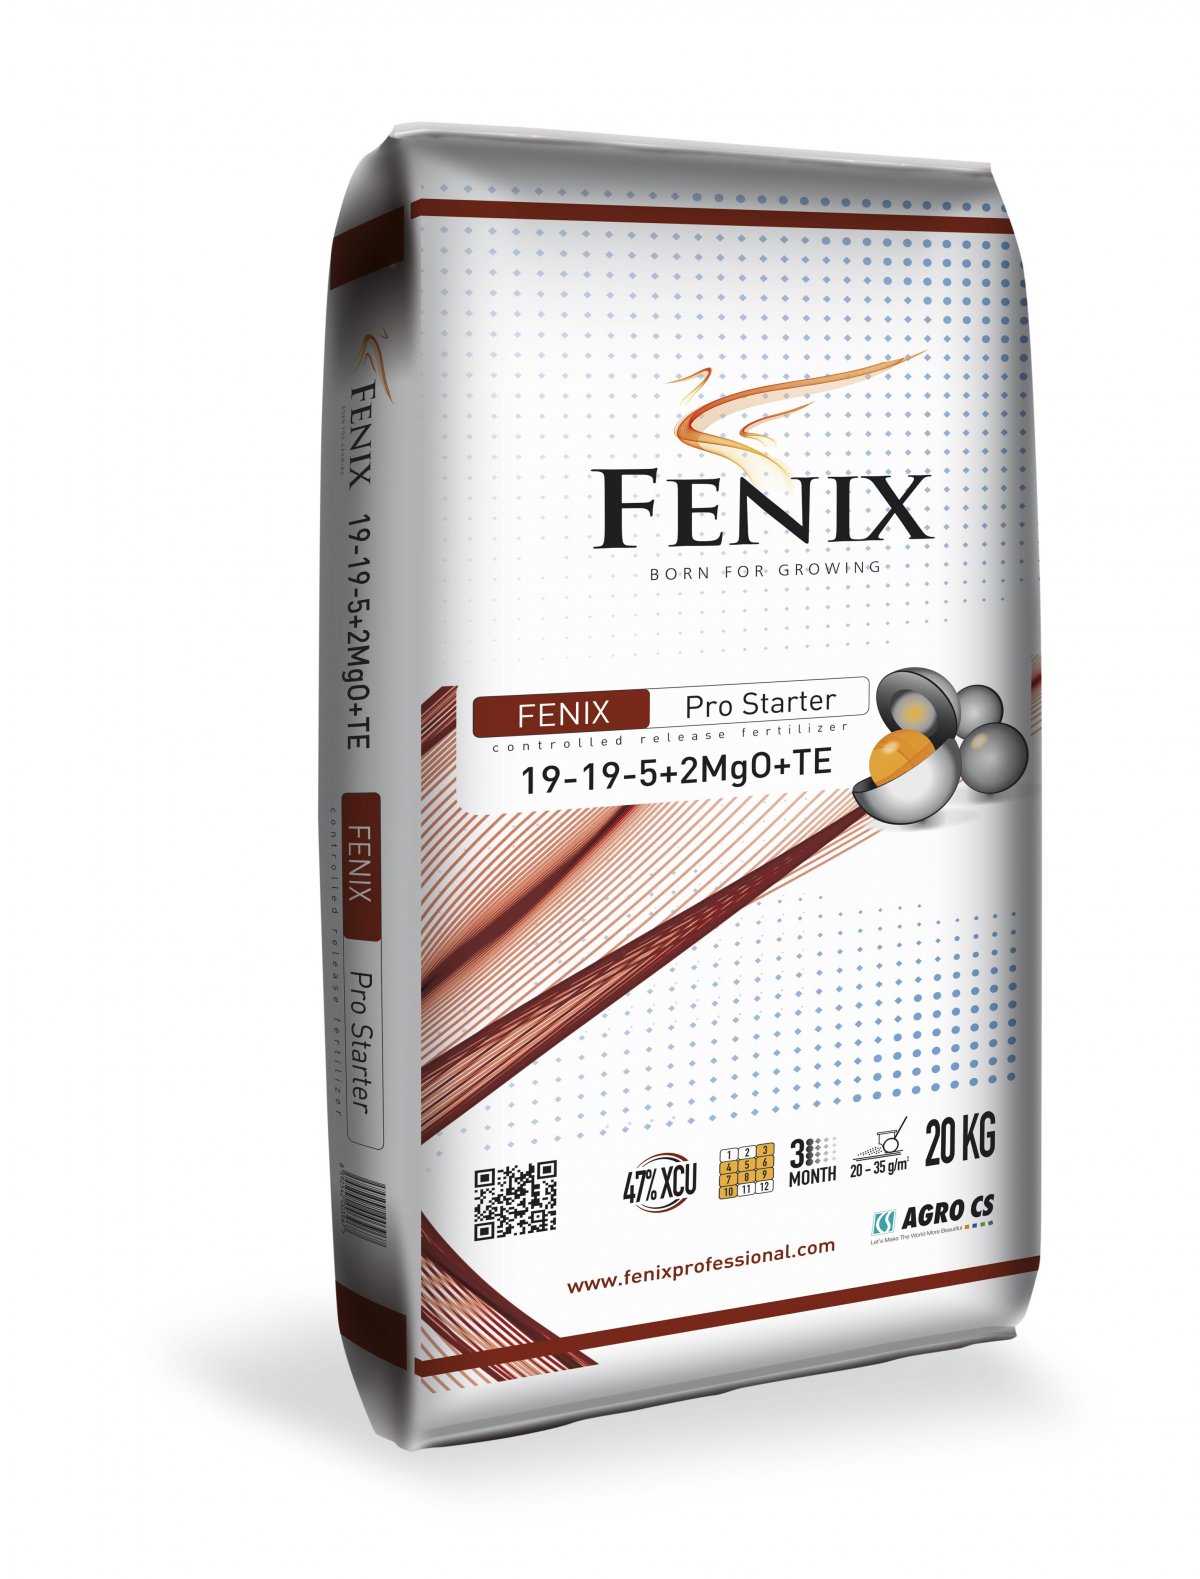 Fenix Pro Starterrasen 19-19-5+2MgO+TE 20 kg